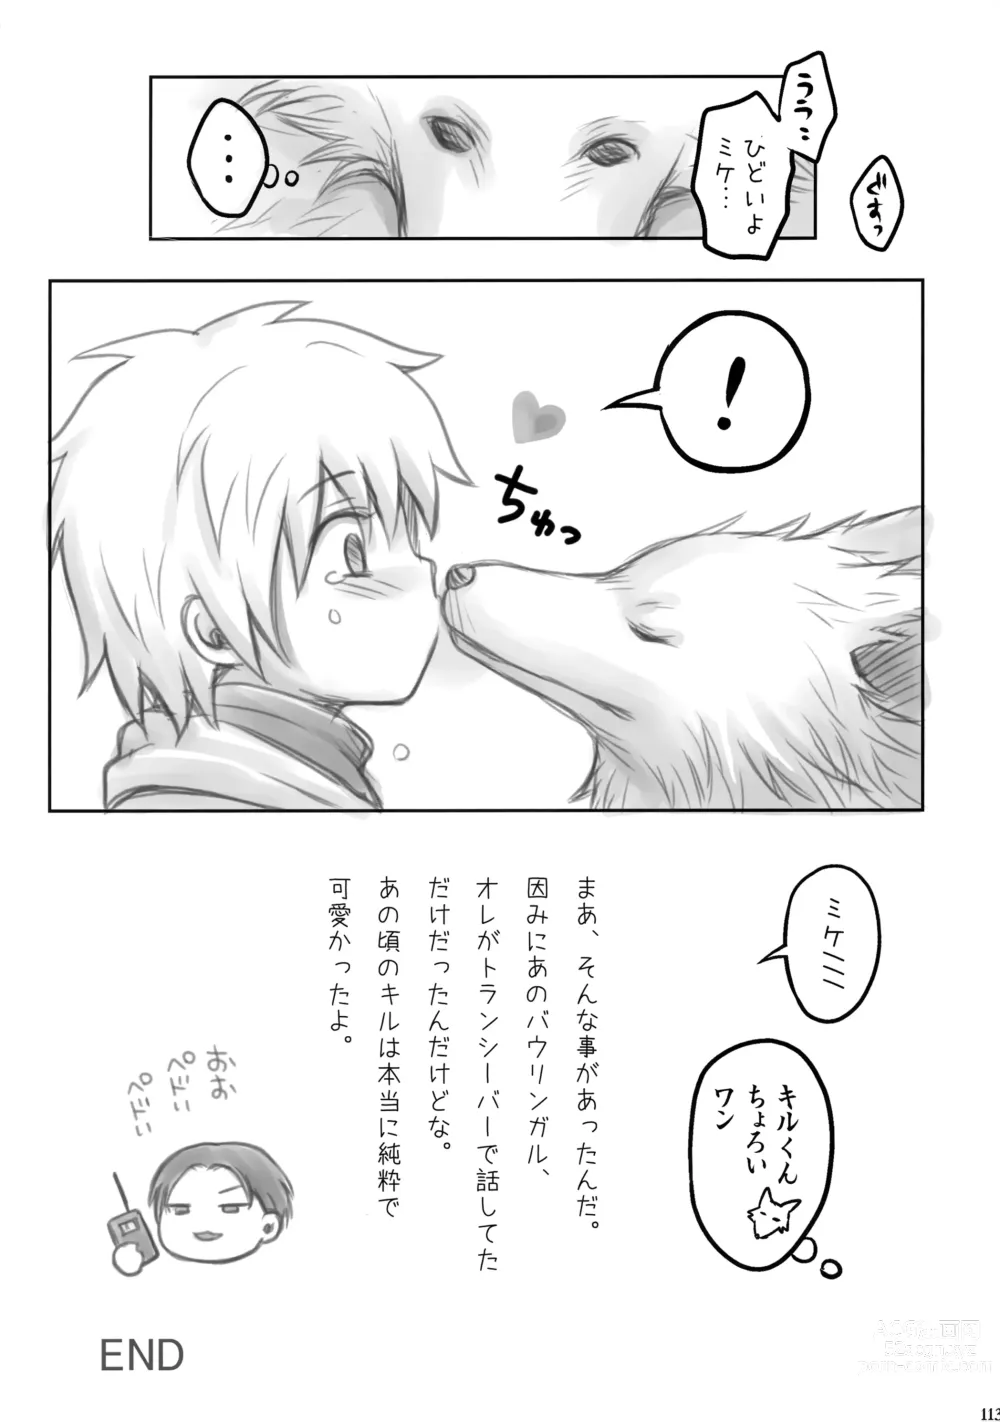 Page 112 of doujinshi Hunter no hon Sairoku-shuu